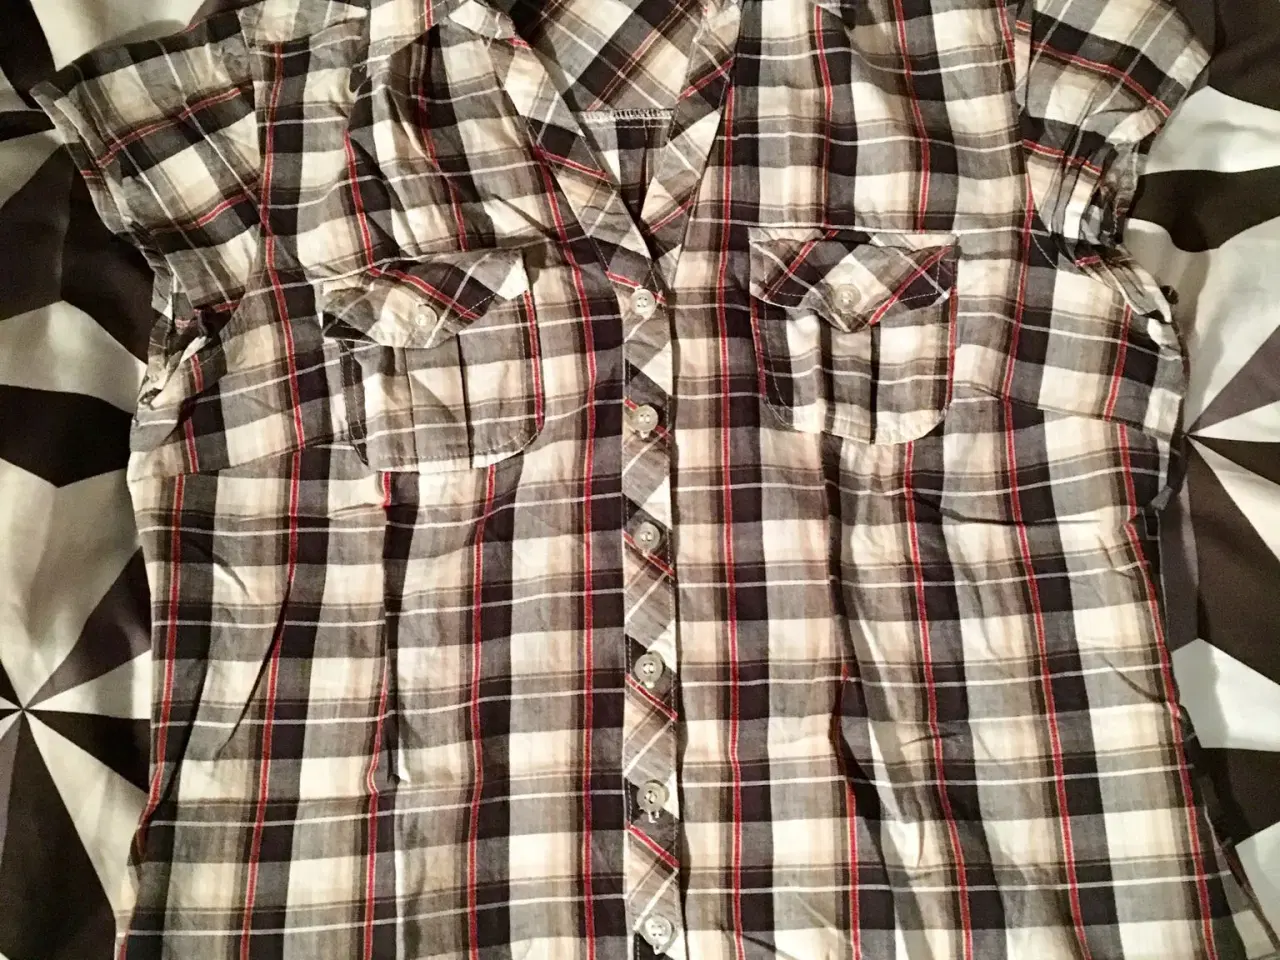 Billede 12 - Diverse skjorter til salg